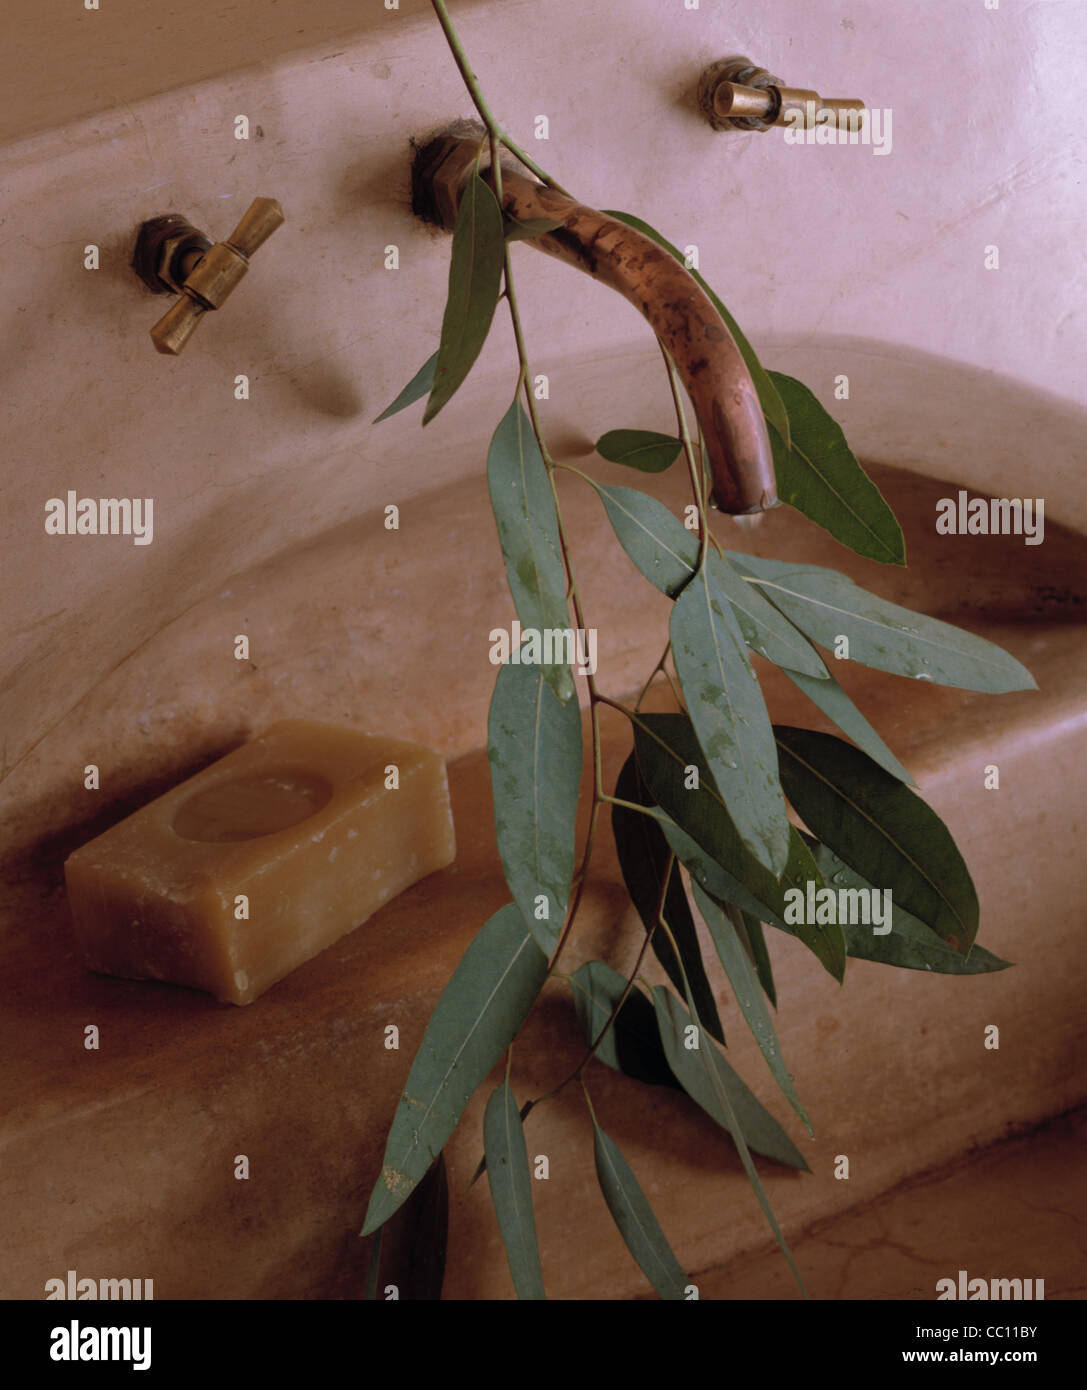 Toujours : Eucalyptus, savon d'huile d'olive Banque D'Images